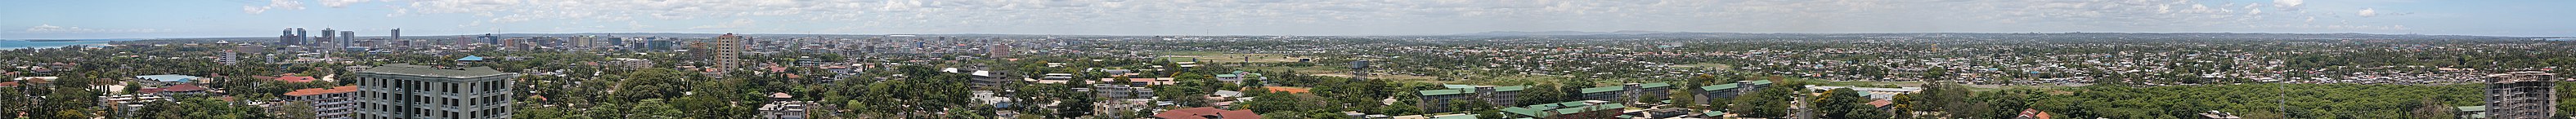 Tanzanya'nın de facto başkenti Darüsselam. (Üreten ve yükleyen: Muhammad Mahdi Karim)